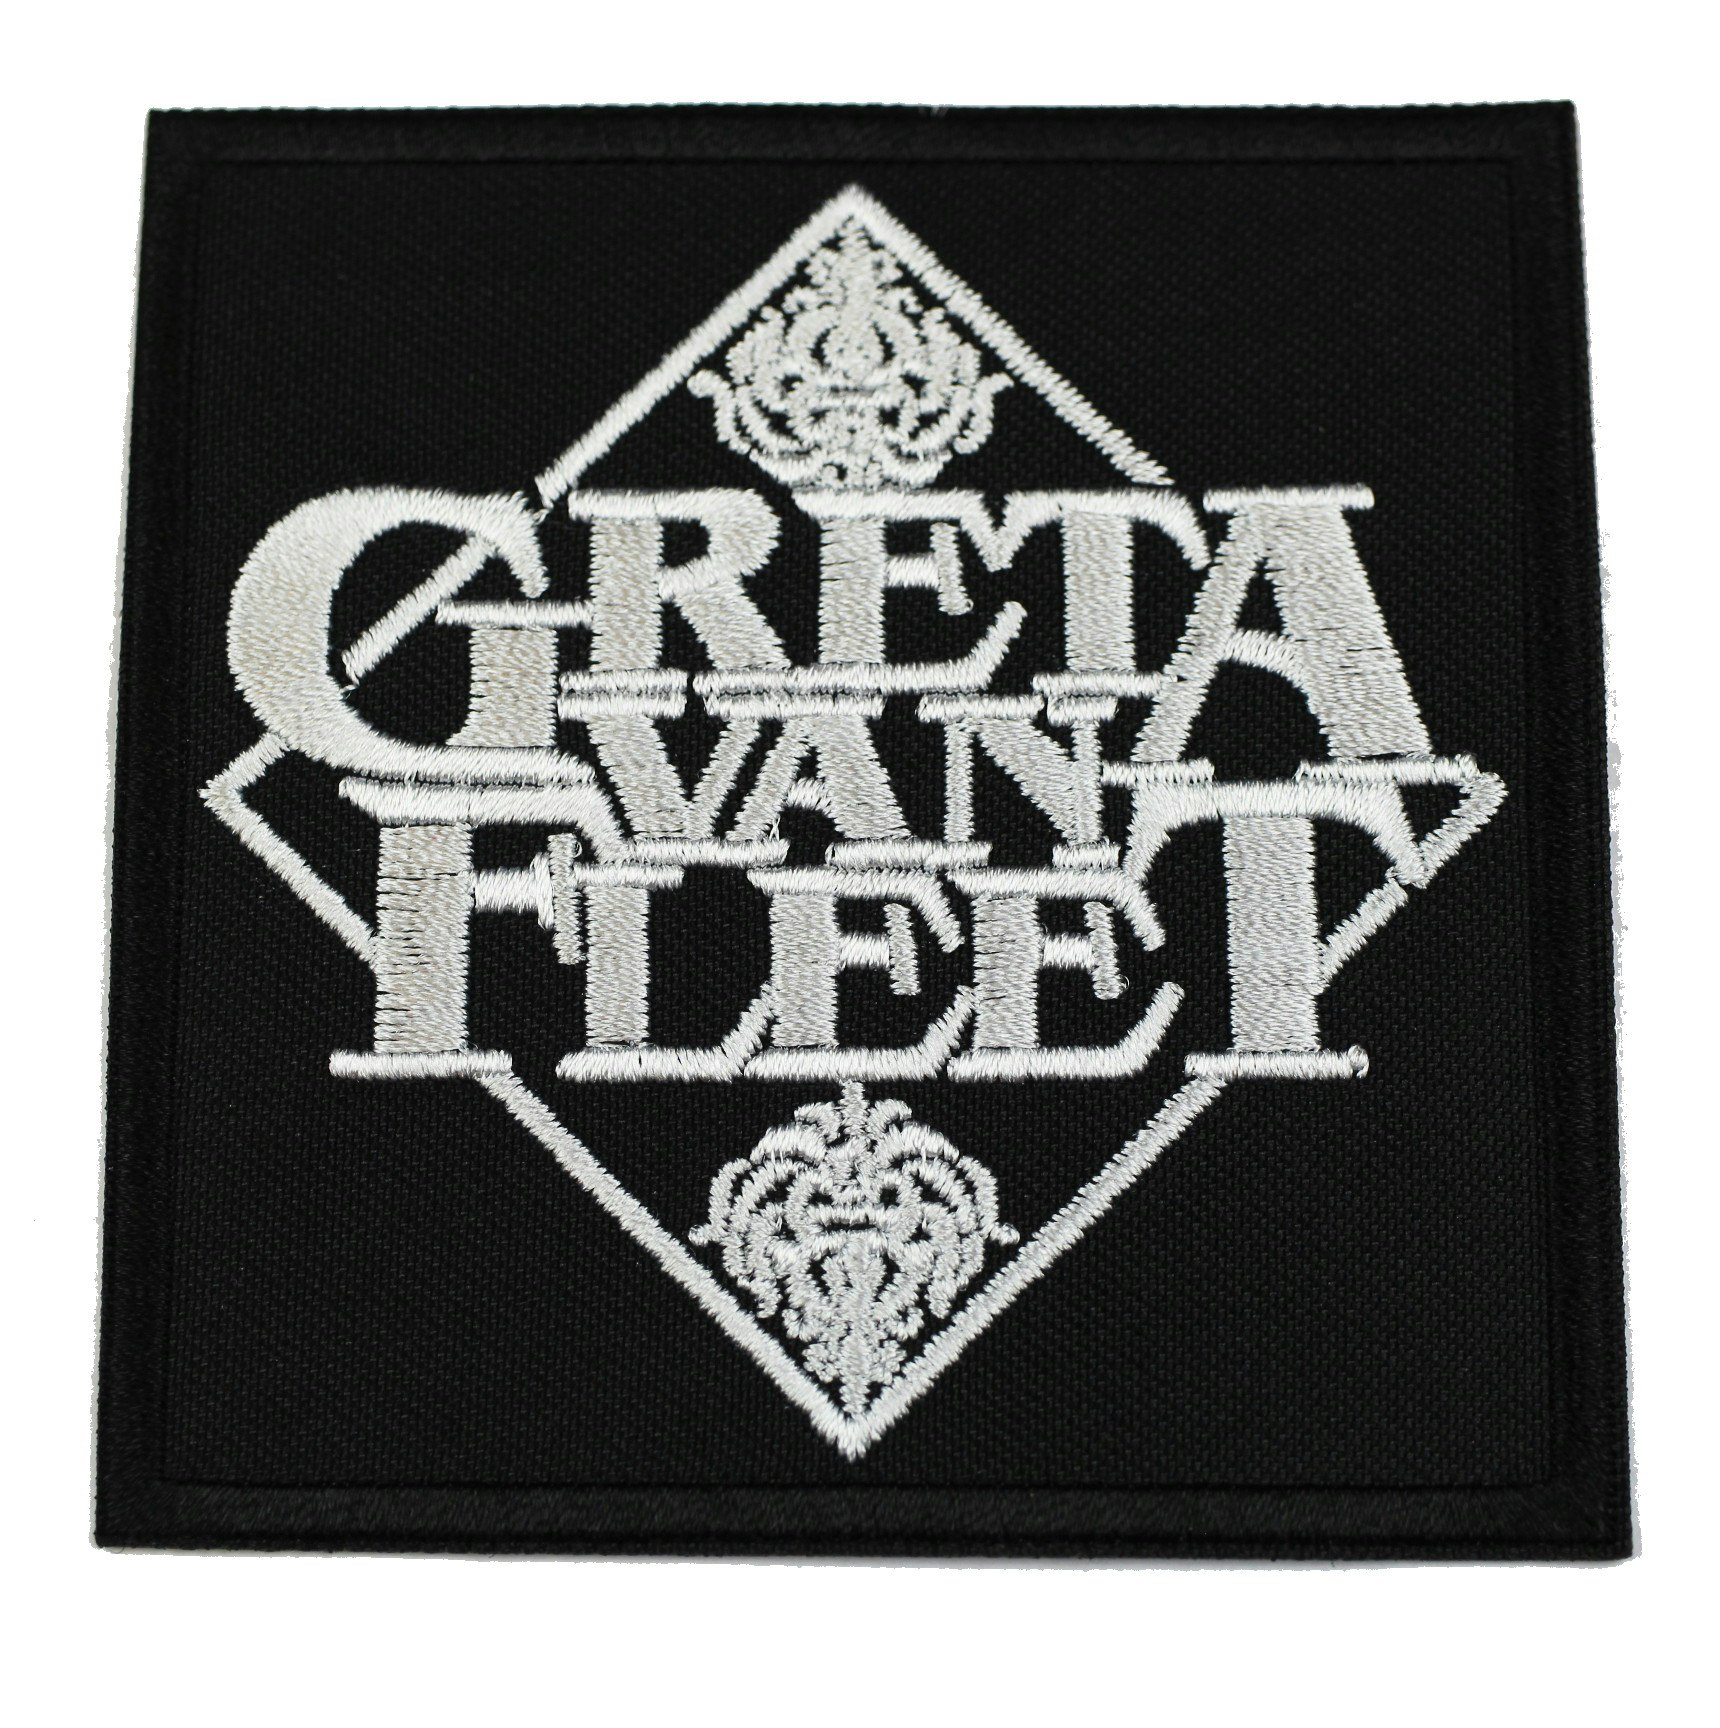 Greta van fleet logo patch